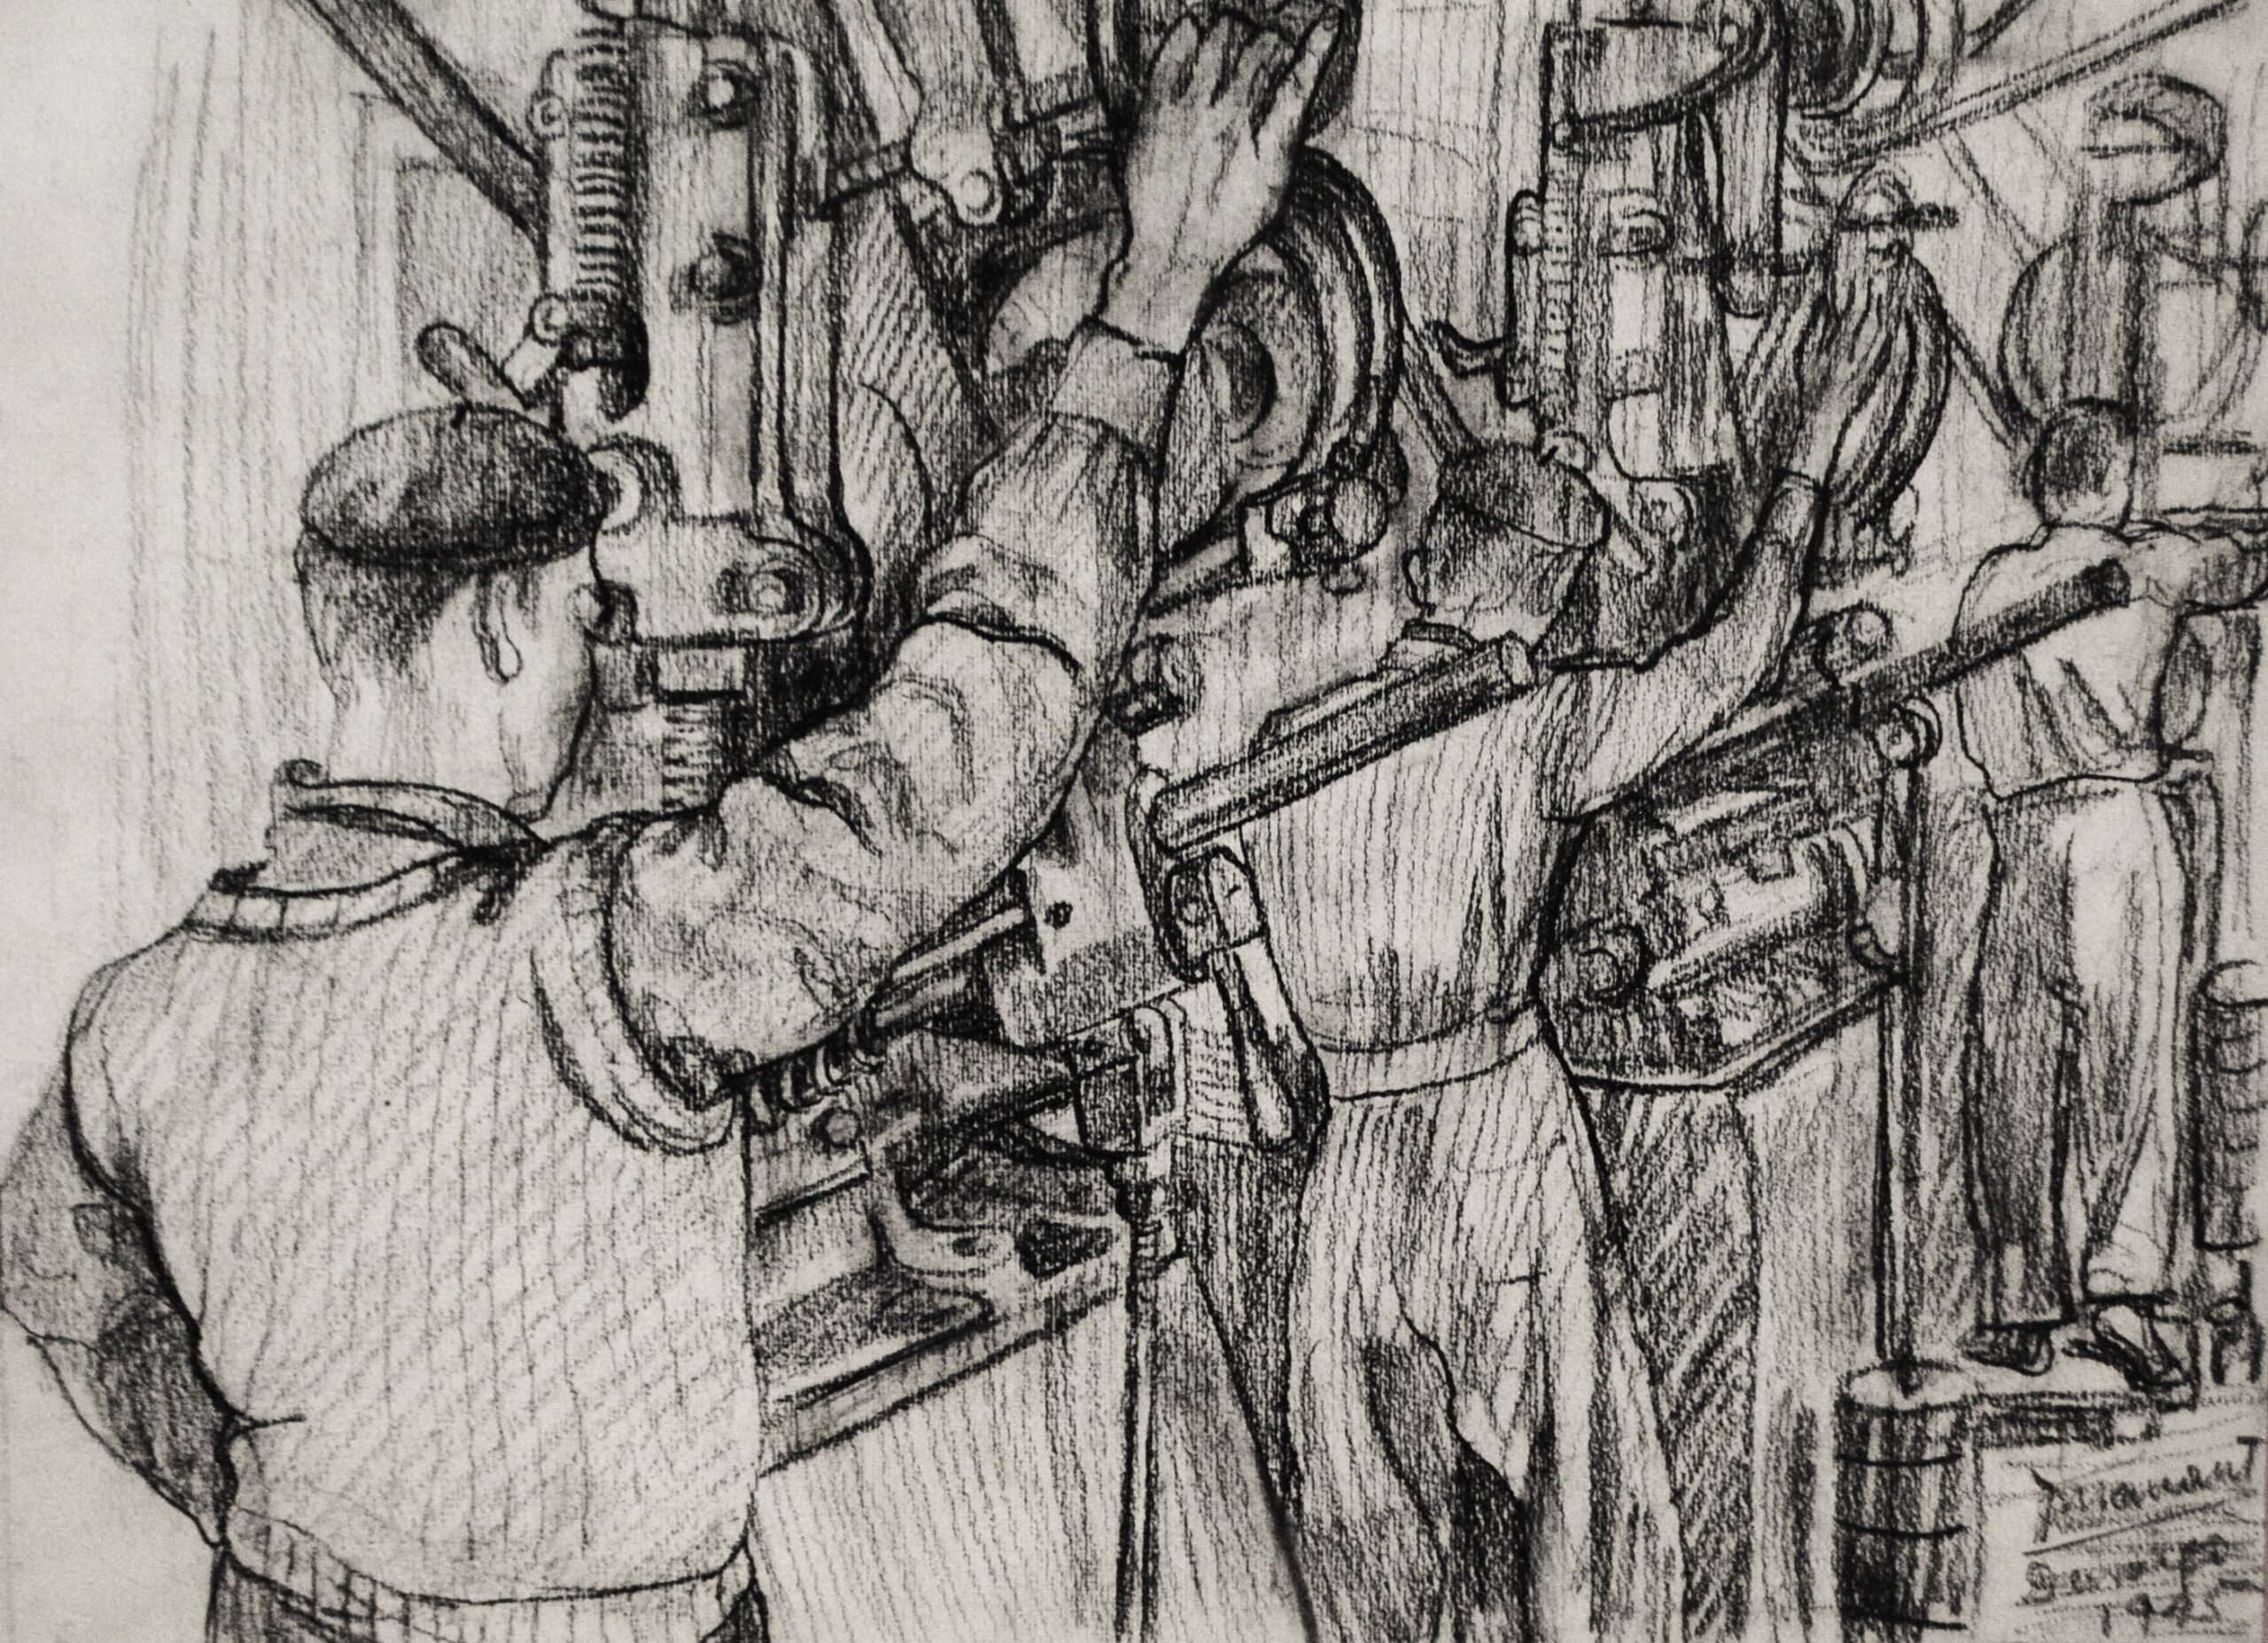 Pintura de José Manaut titulada Hombres en fábrica, Durango (Vizcaya), 1945. Papel sobre carboncillo.